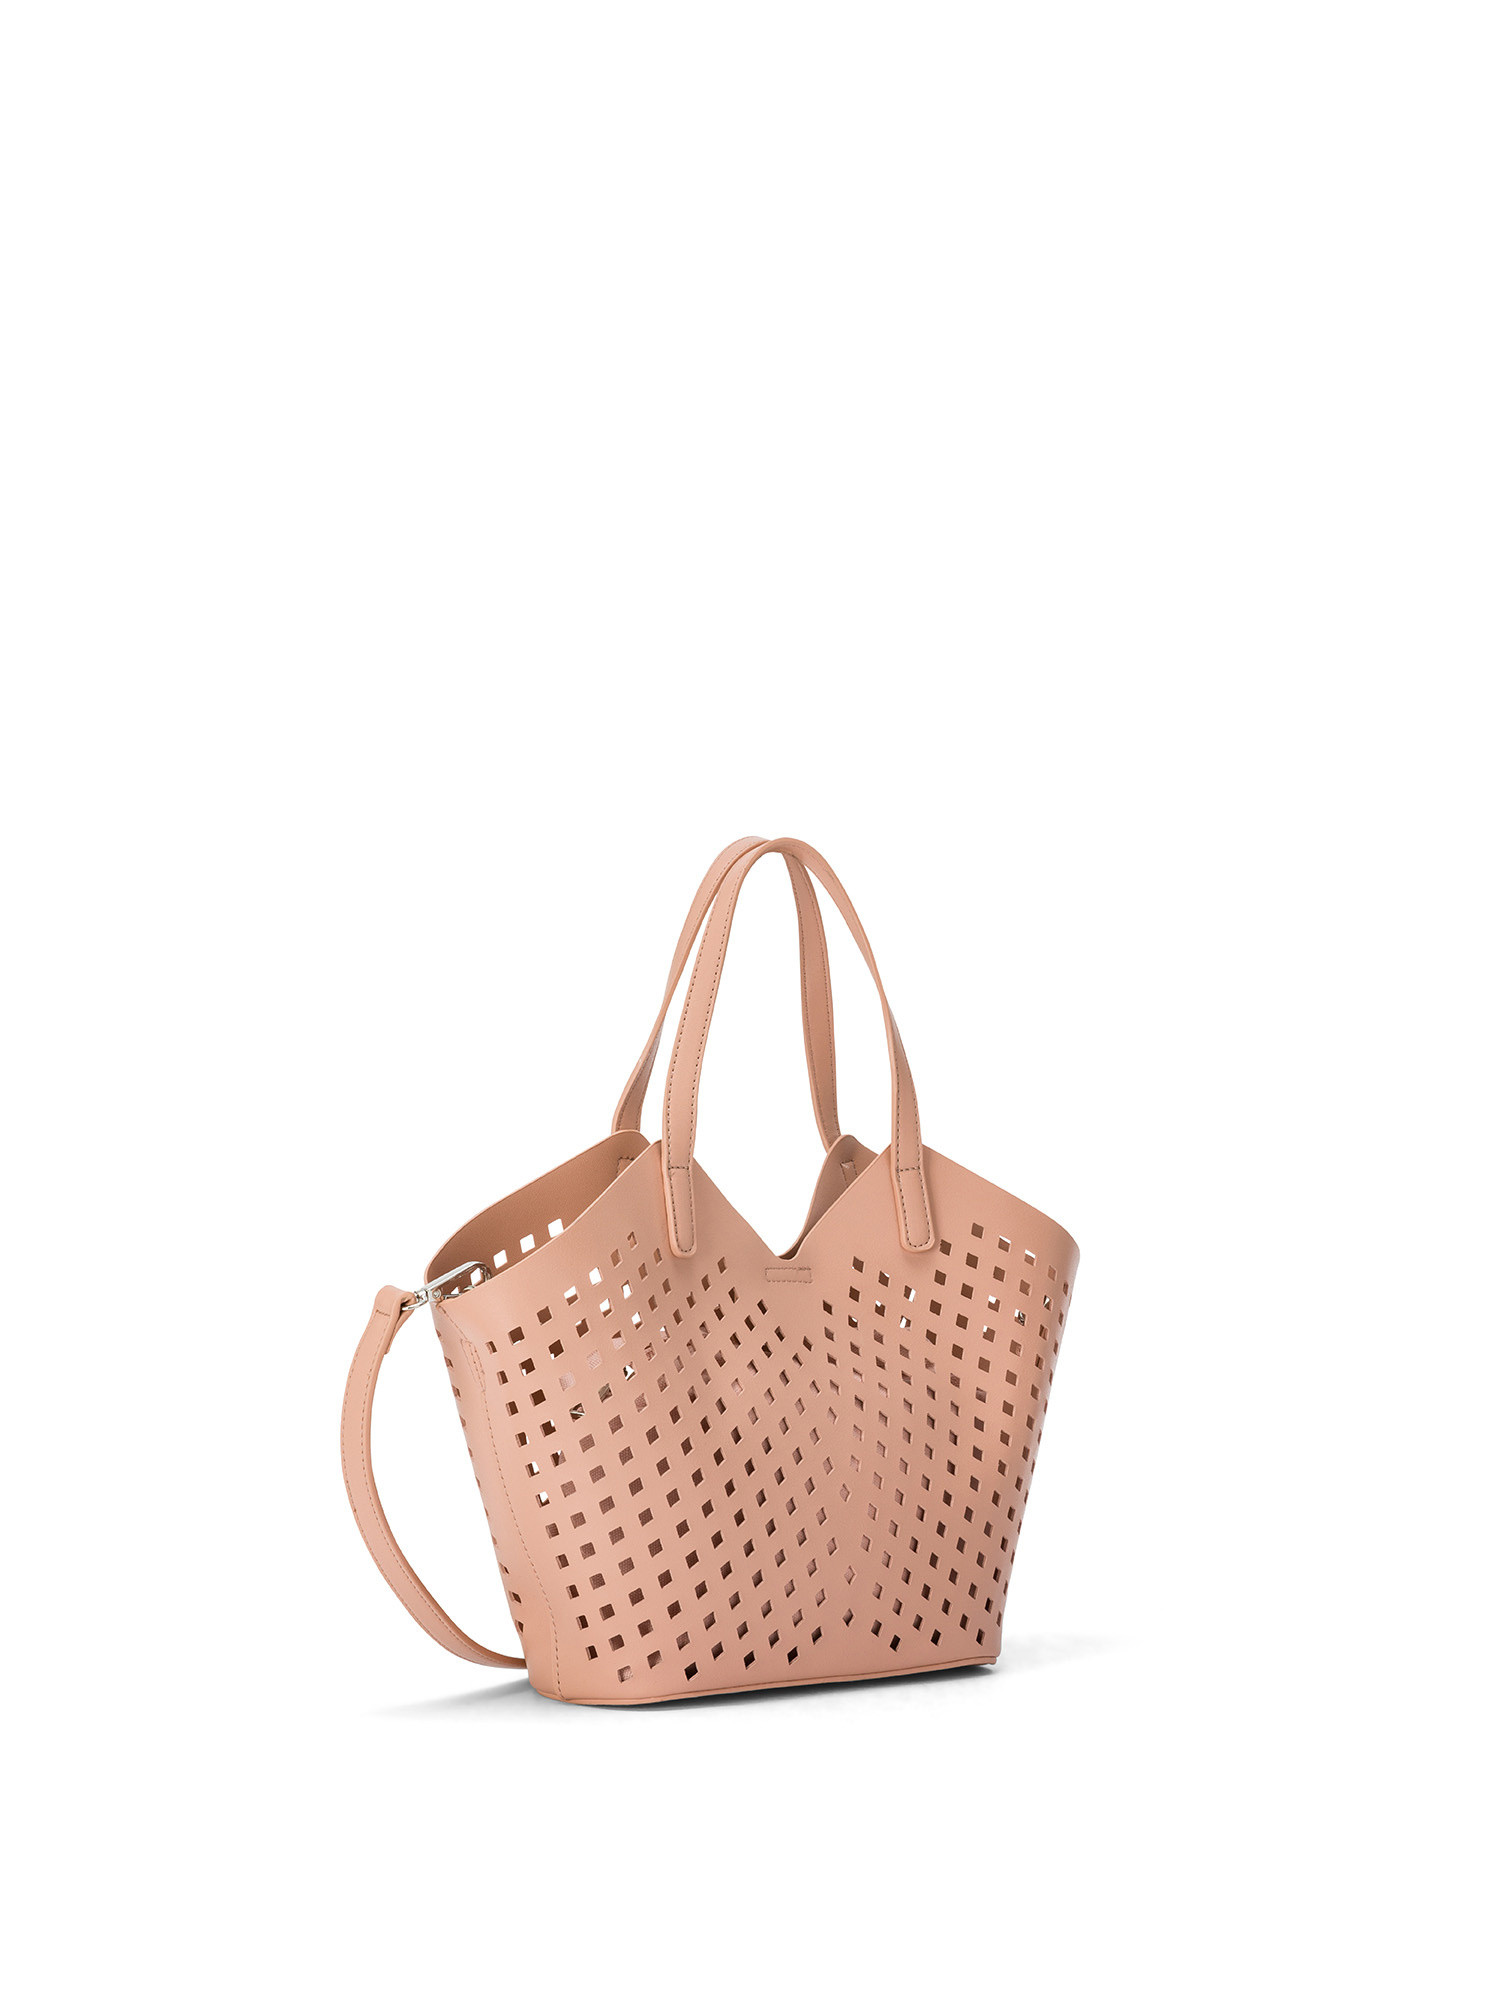 Koan - Perforated shopping bag, Pink, large image number 1